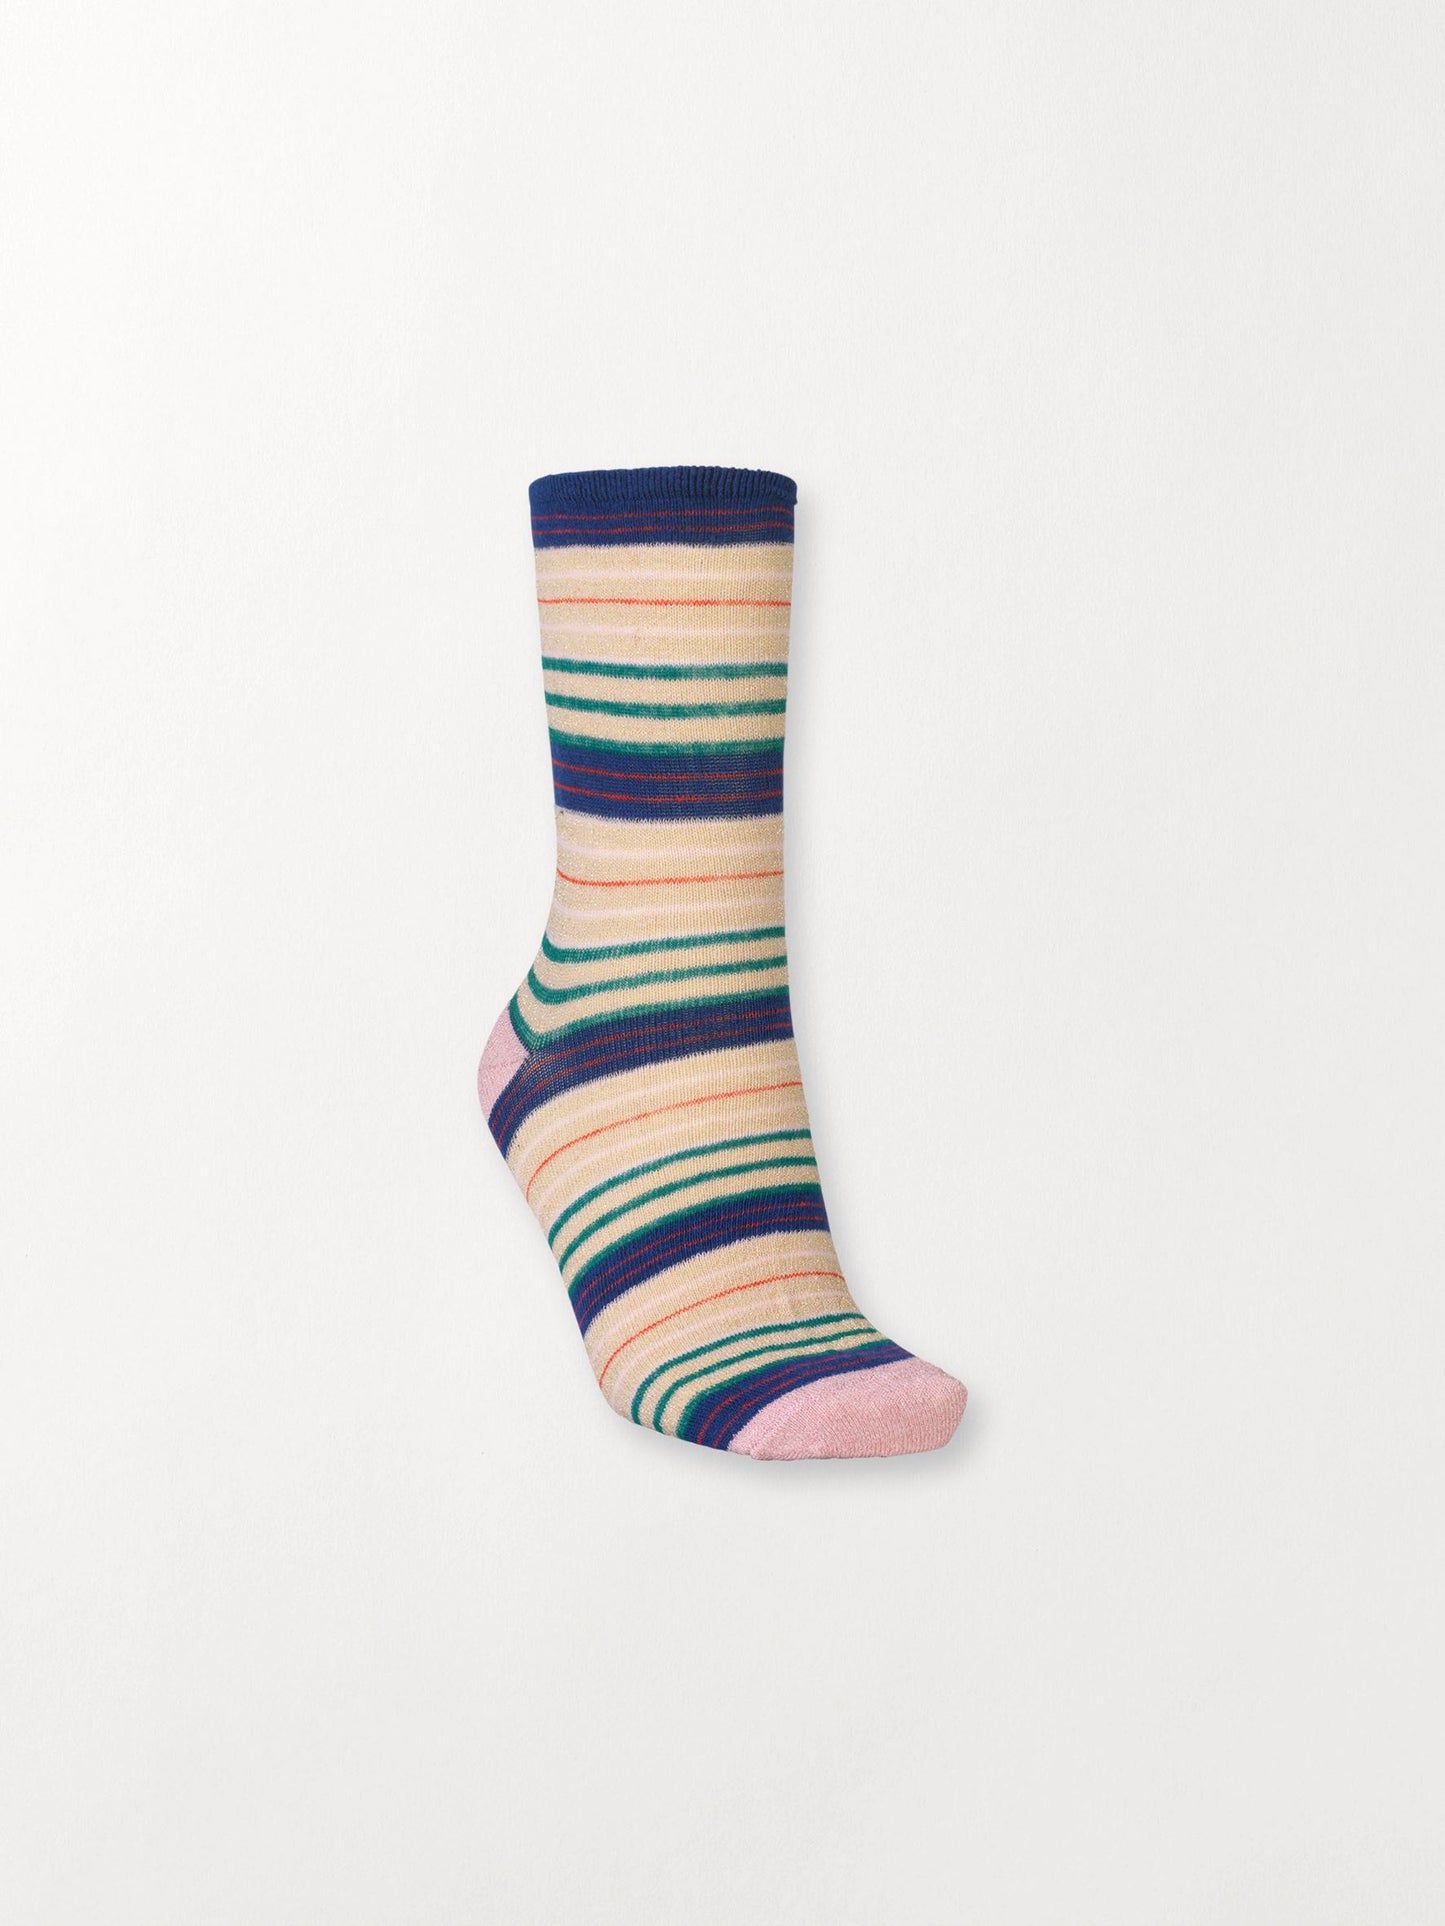 Dory Colourful Sock Socks Becksöndergaard.dk   